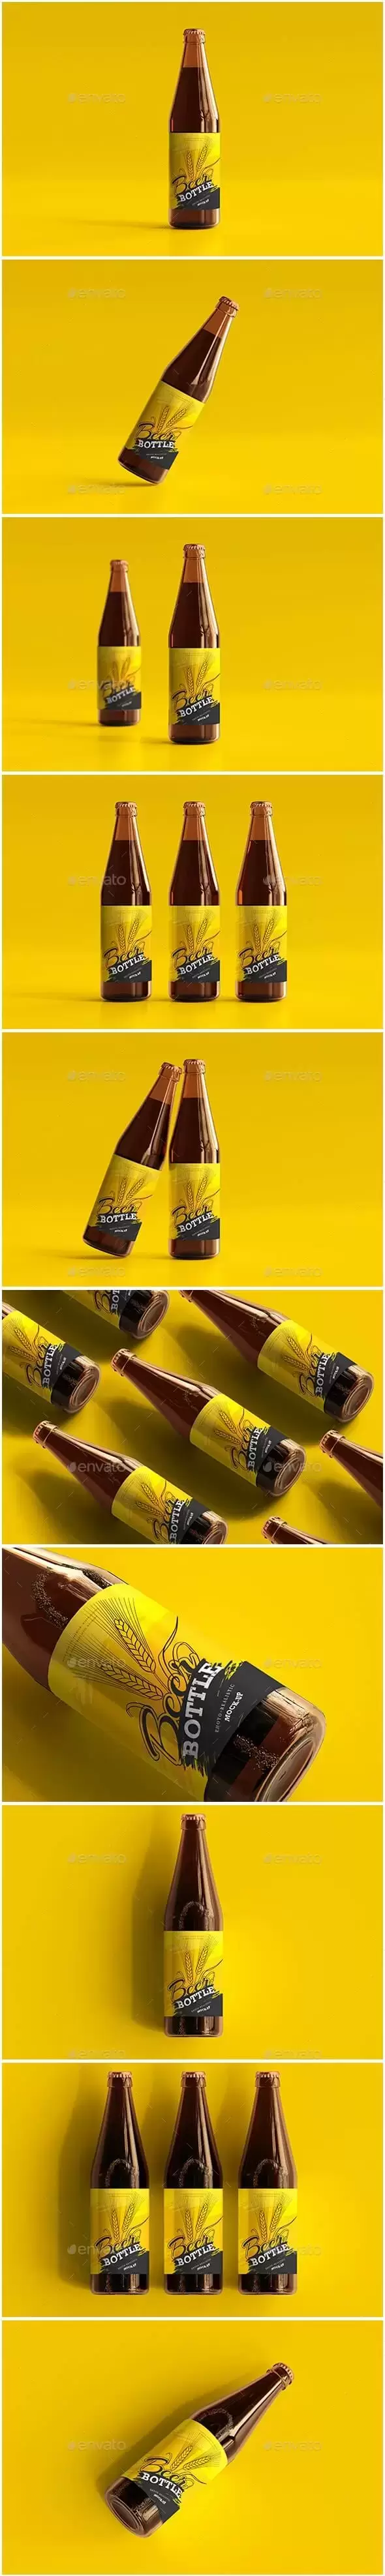 啤酒玻璃瓶品牌包装设计样机 (psd)免费下载